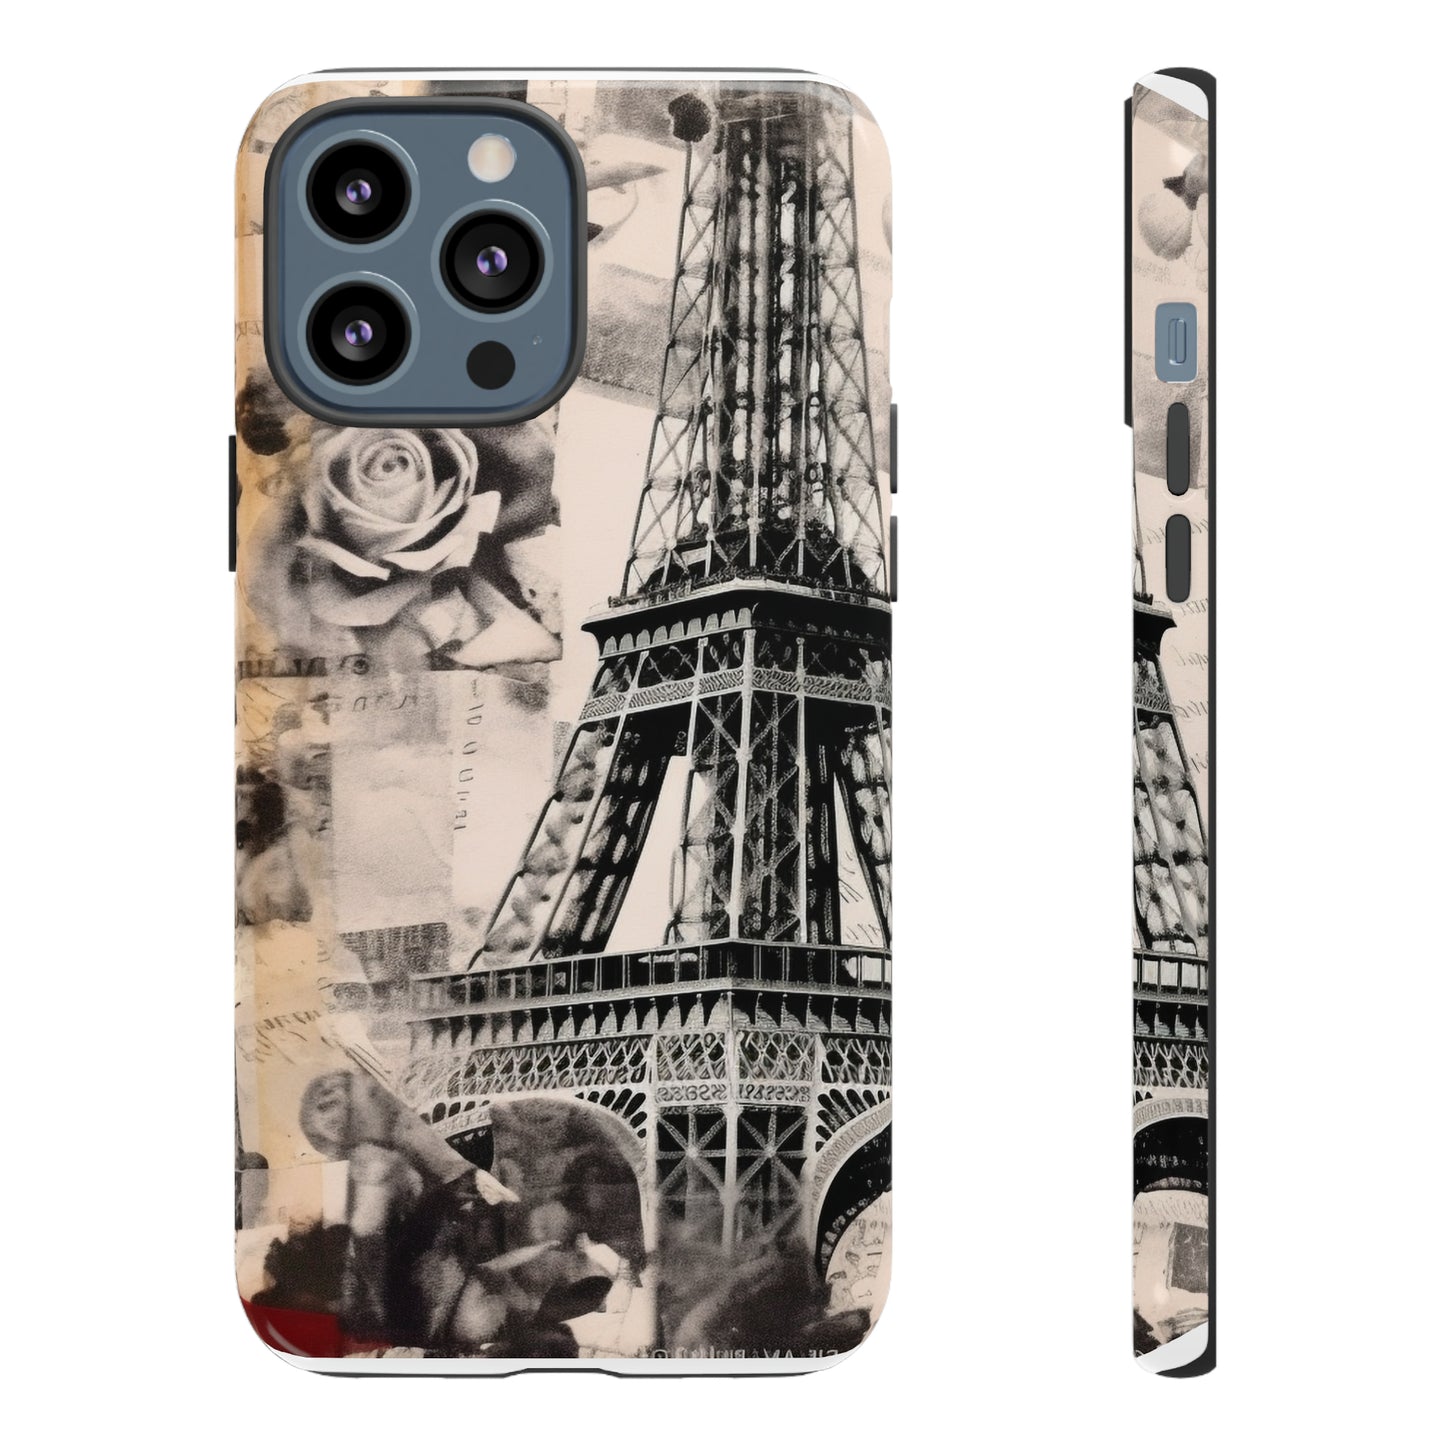 ALLEZ LET'S GO TO PARIS French Kiss Fashion Iphone Tough Cases